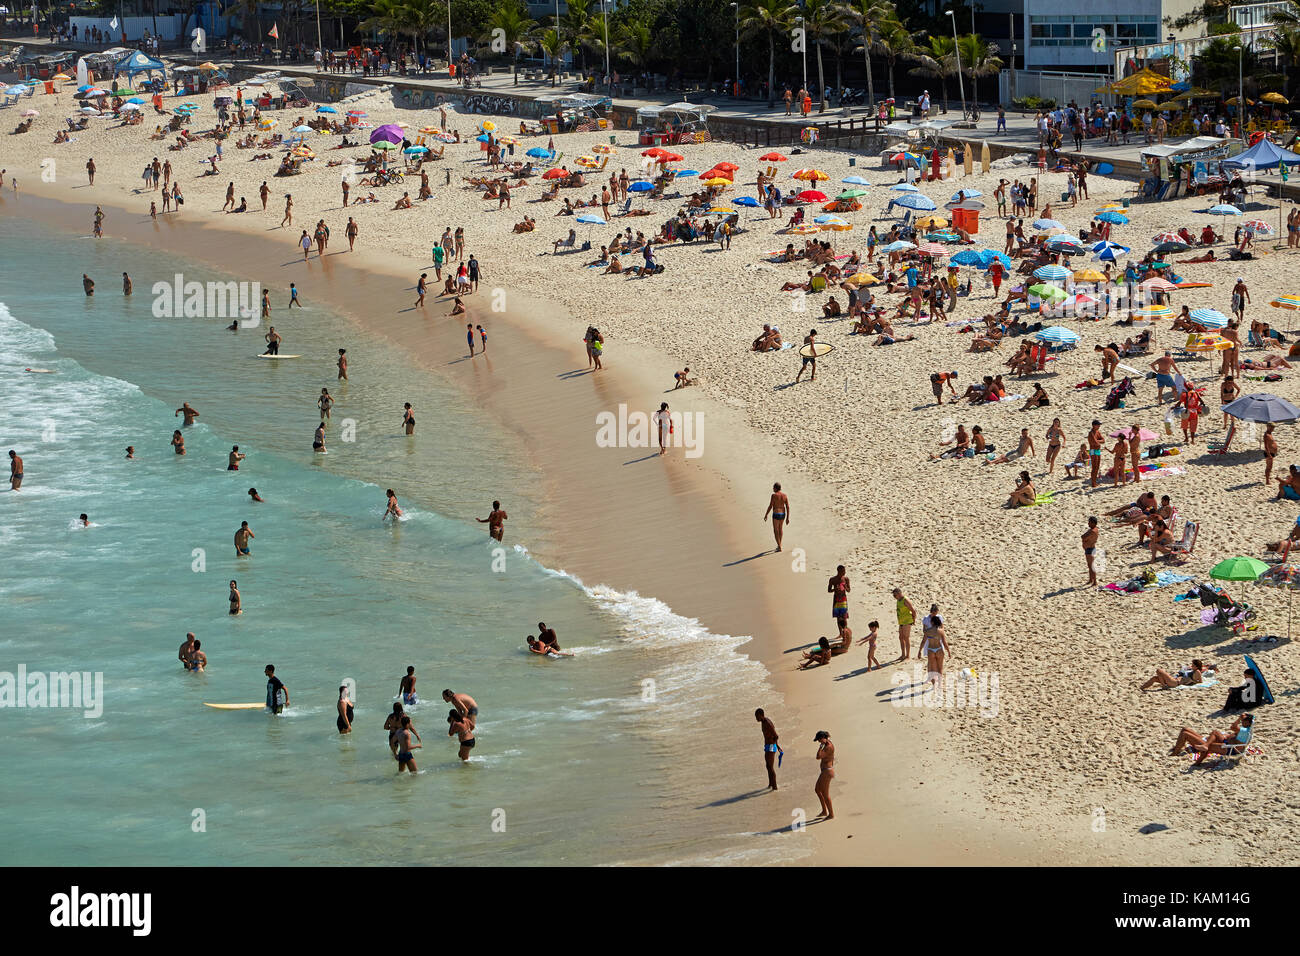 People on Ipanema Beach, Rio de Janeiro, Brazil, South America Stock Photo